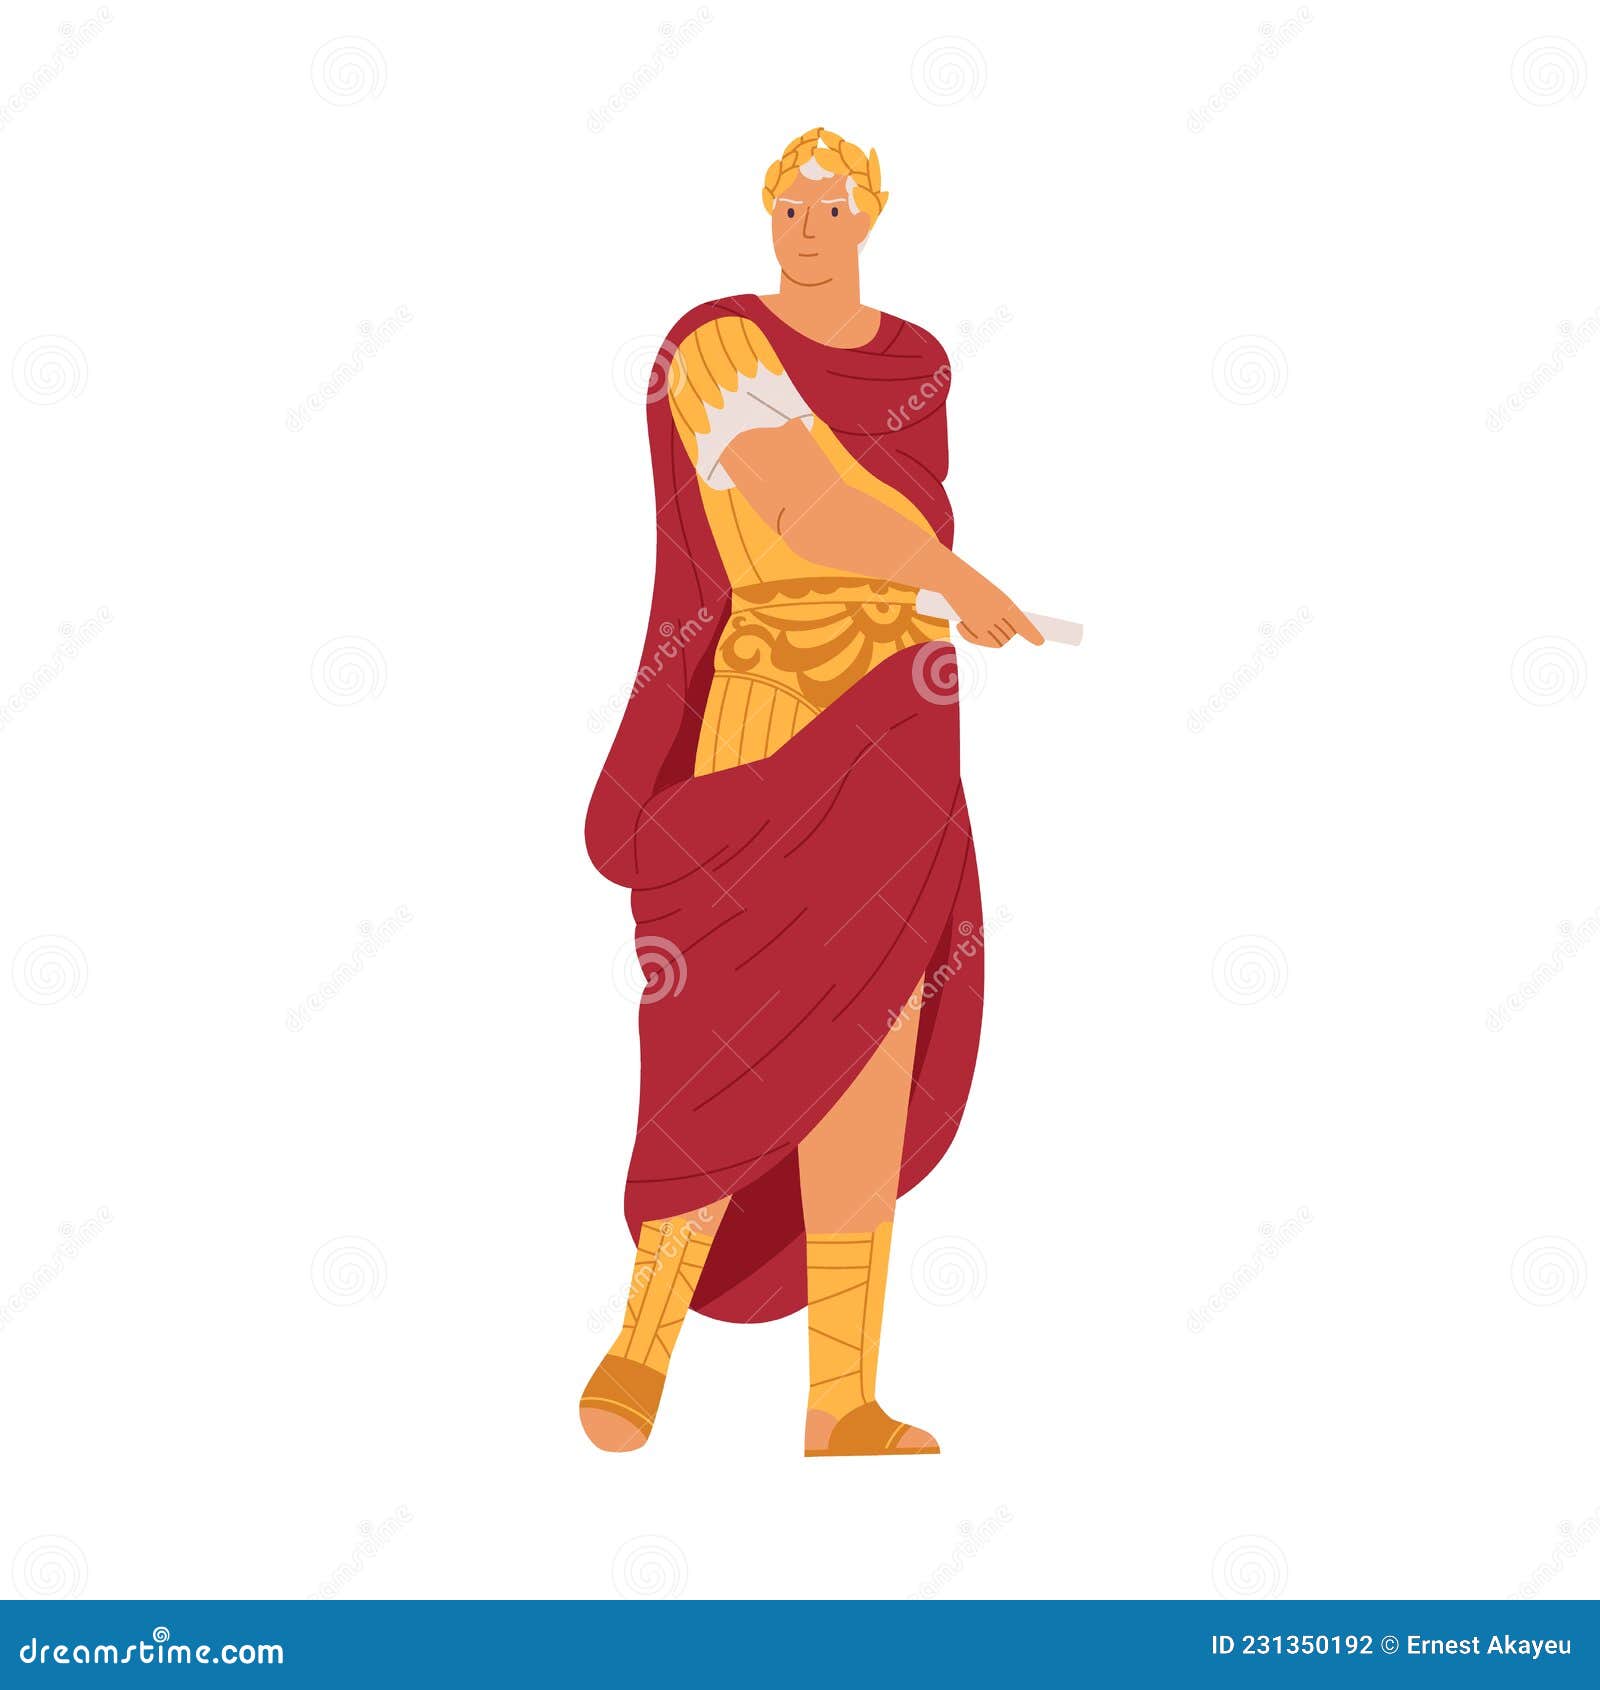 roman emperor in laurel crown and cape. gaius julius caesar, dictator and general of ancient rome. julio cesar